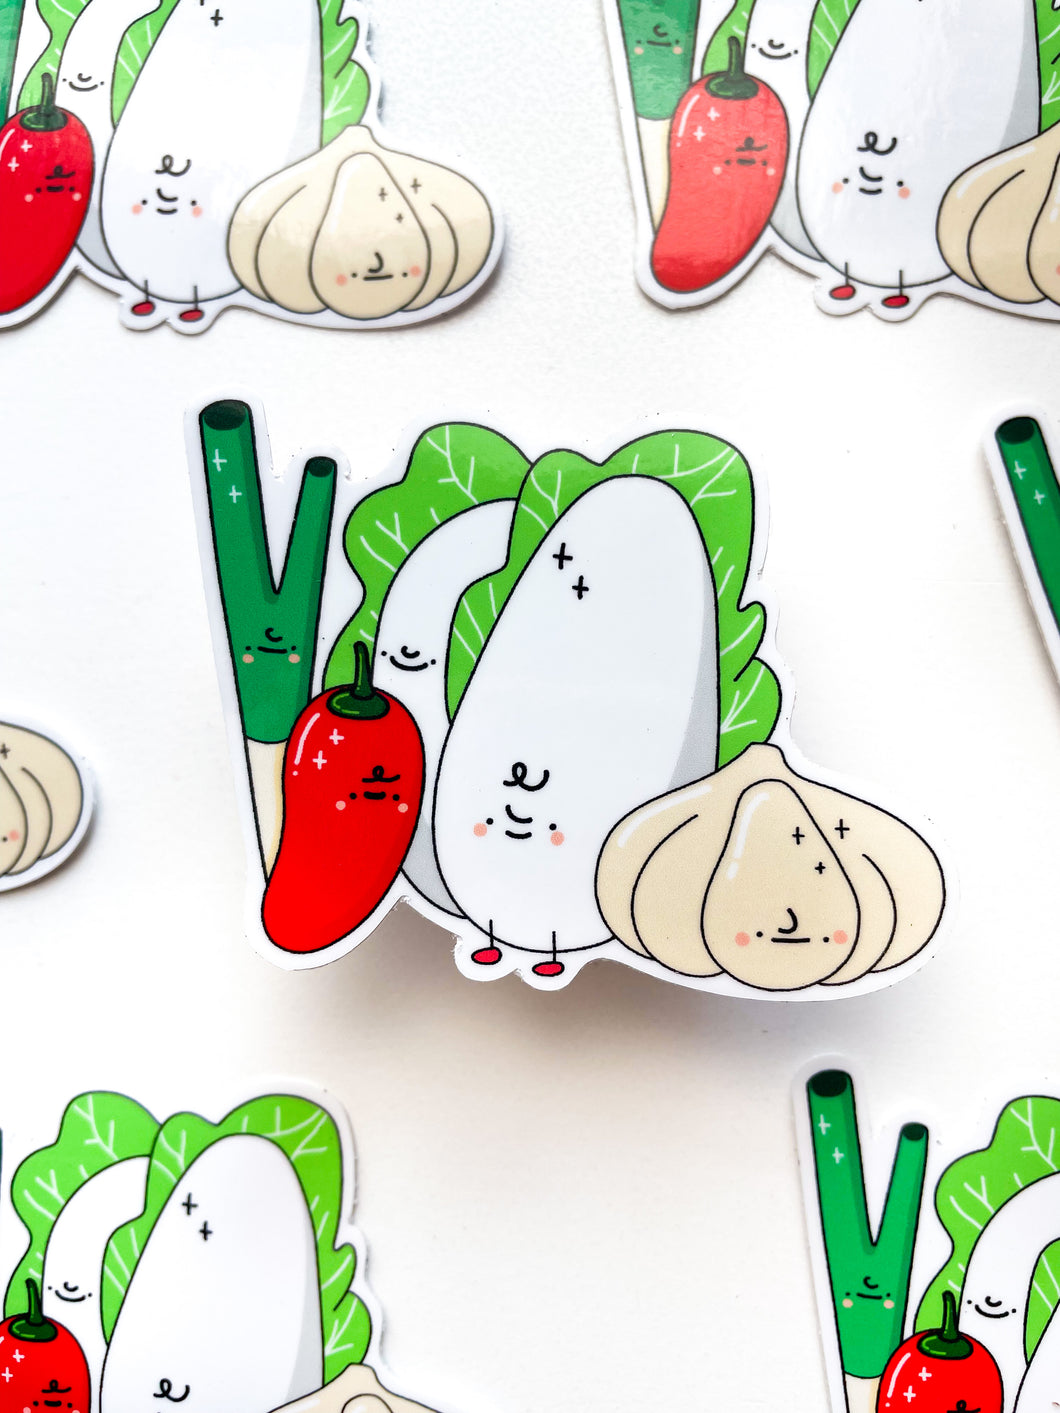 Veggie Friends Sticker